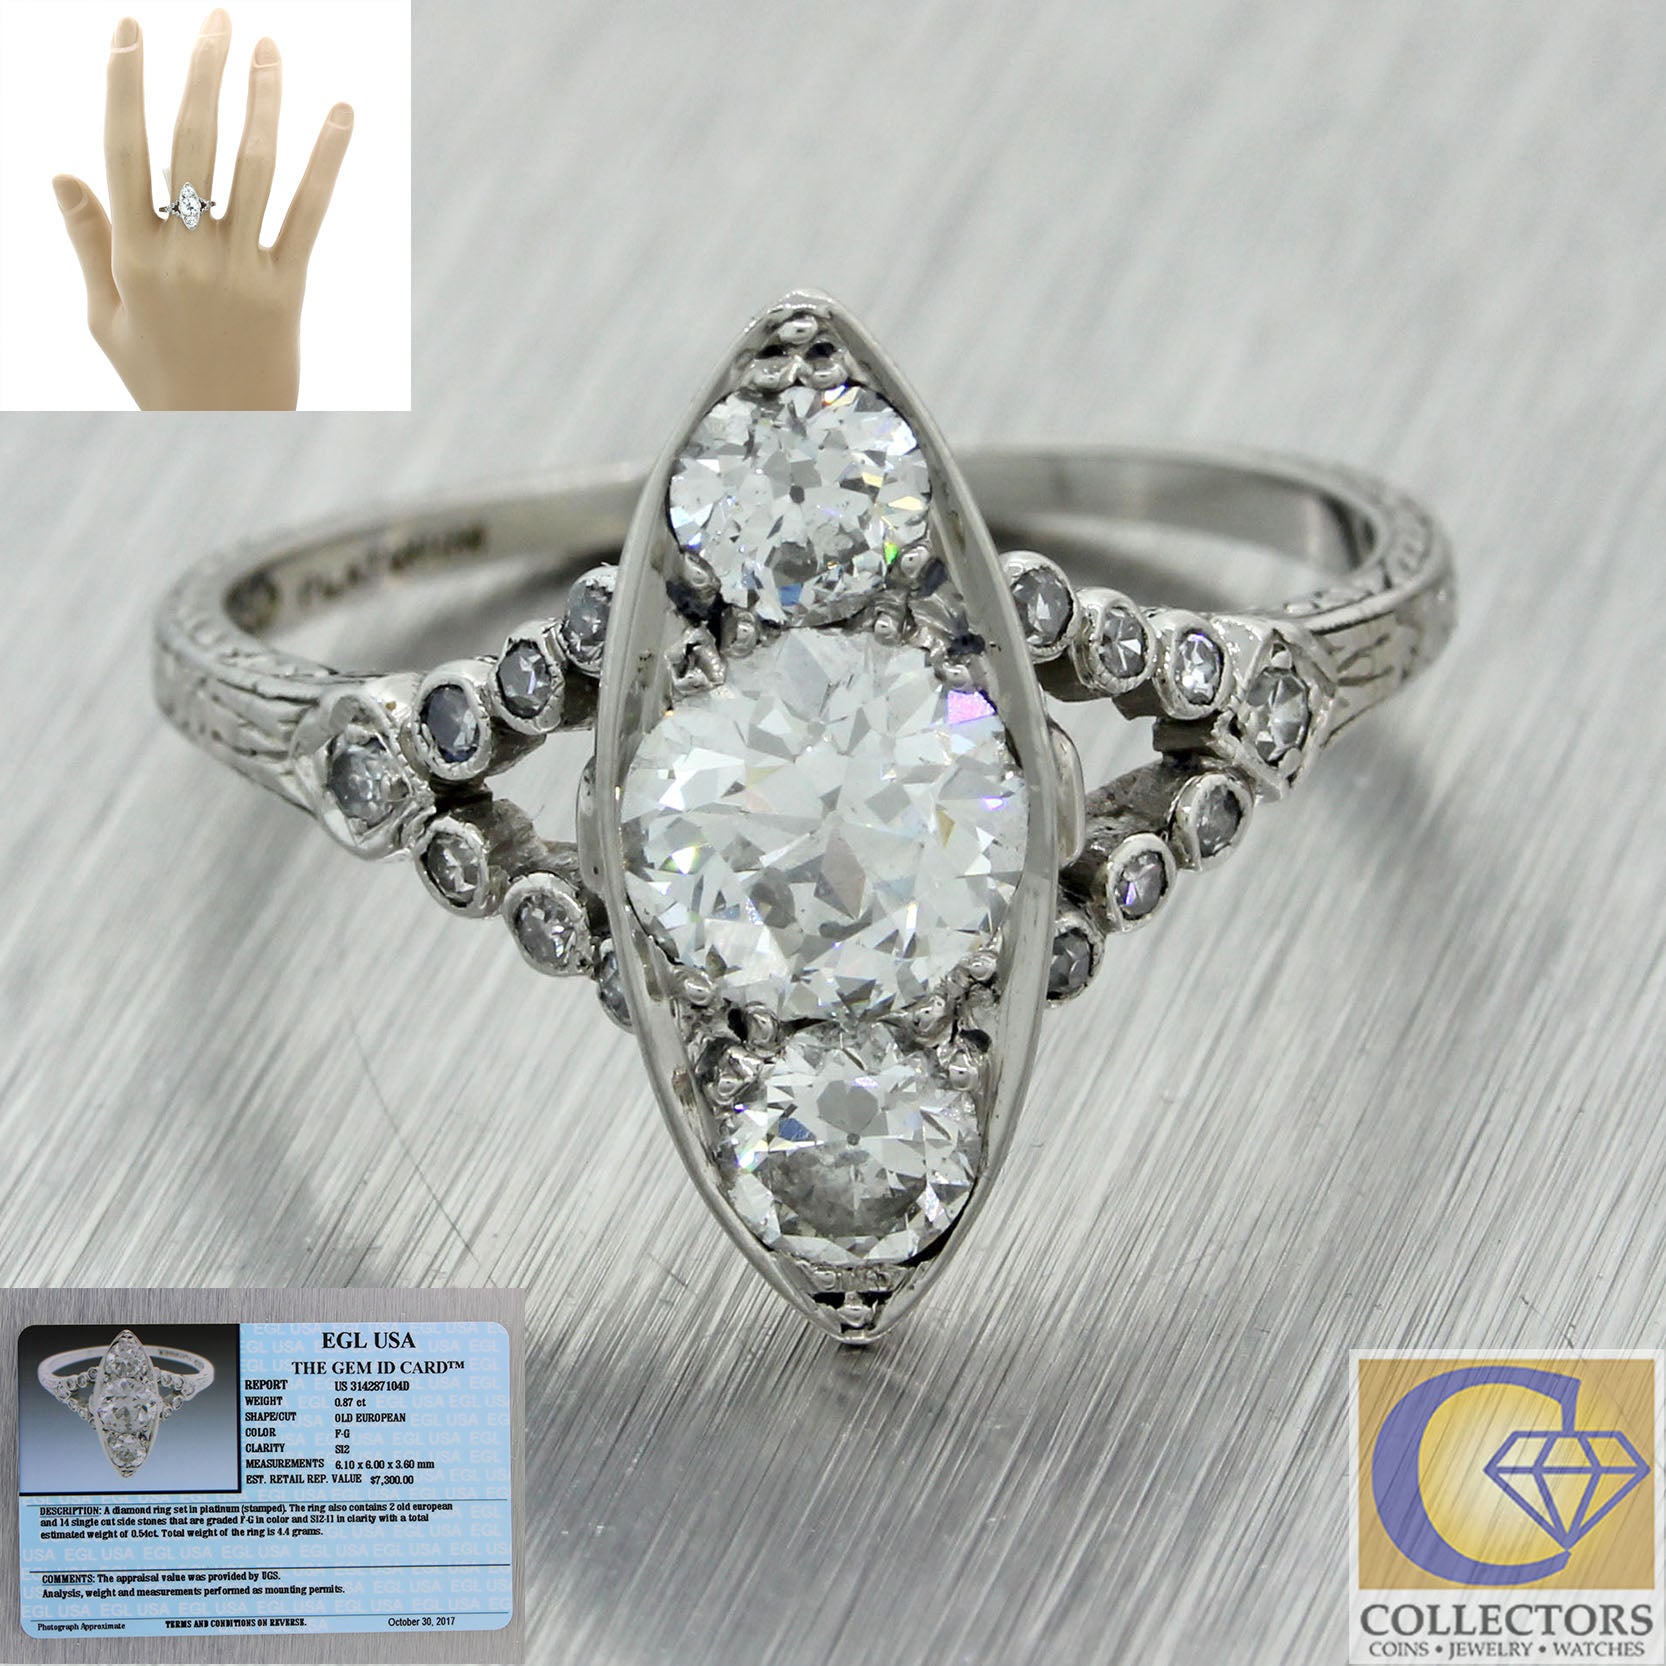 1920s Antique Art Deco Estate Platinum 1.41ctw Diamond Engagement Ring EGL $7300